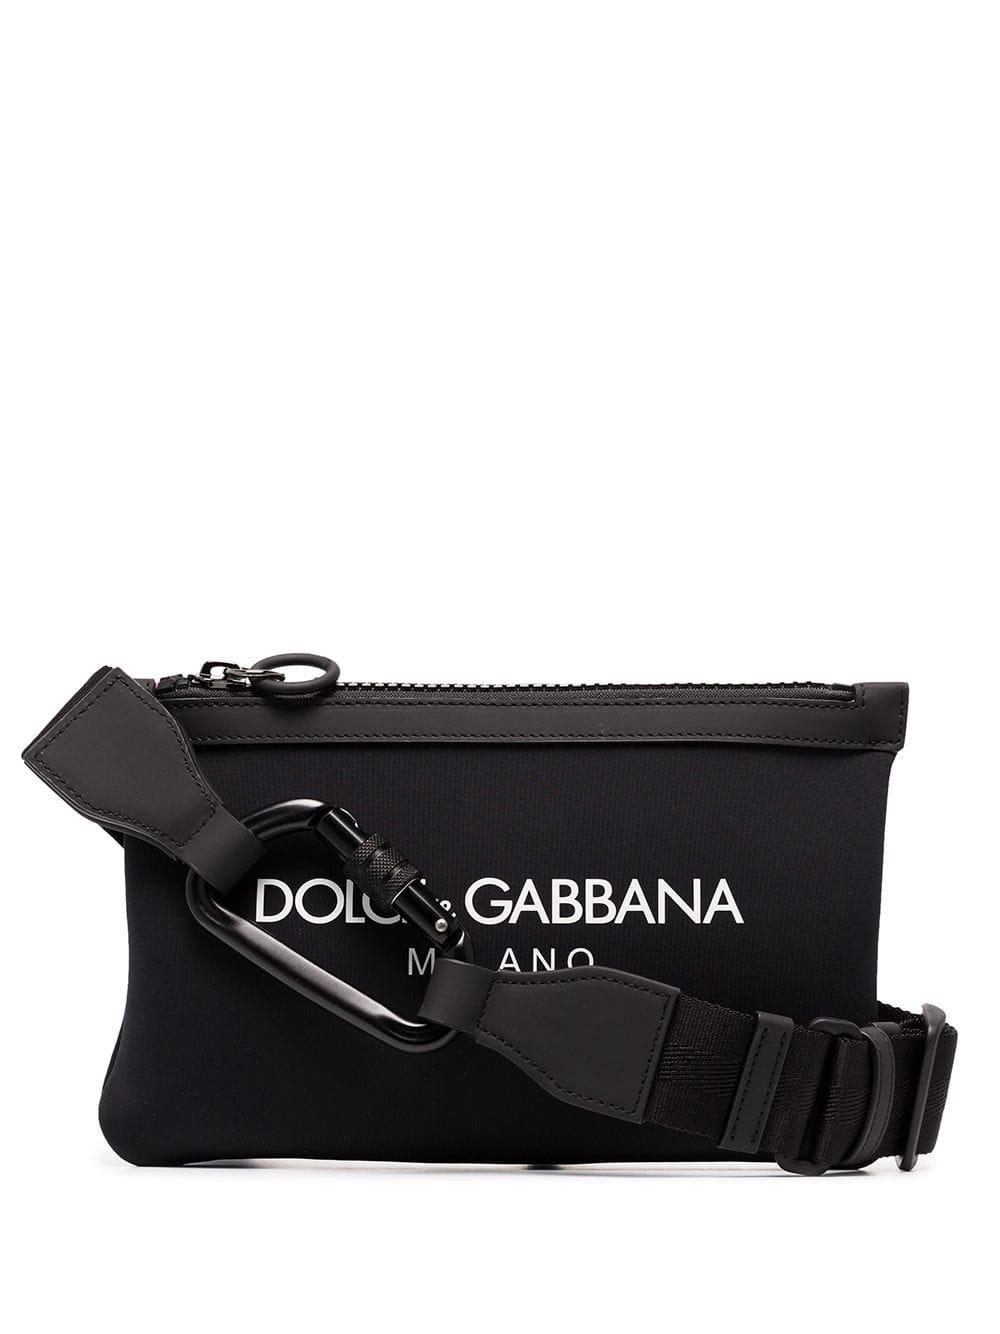 Dolce & Gabbana Neoprene Logo Printed Belt Bag in Black for Men - Lyst